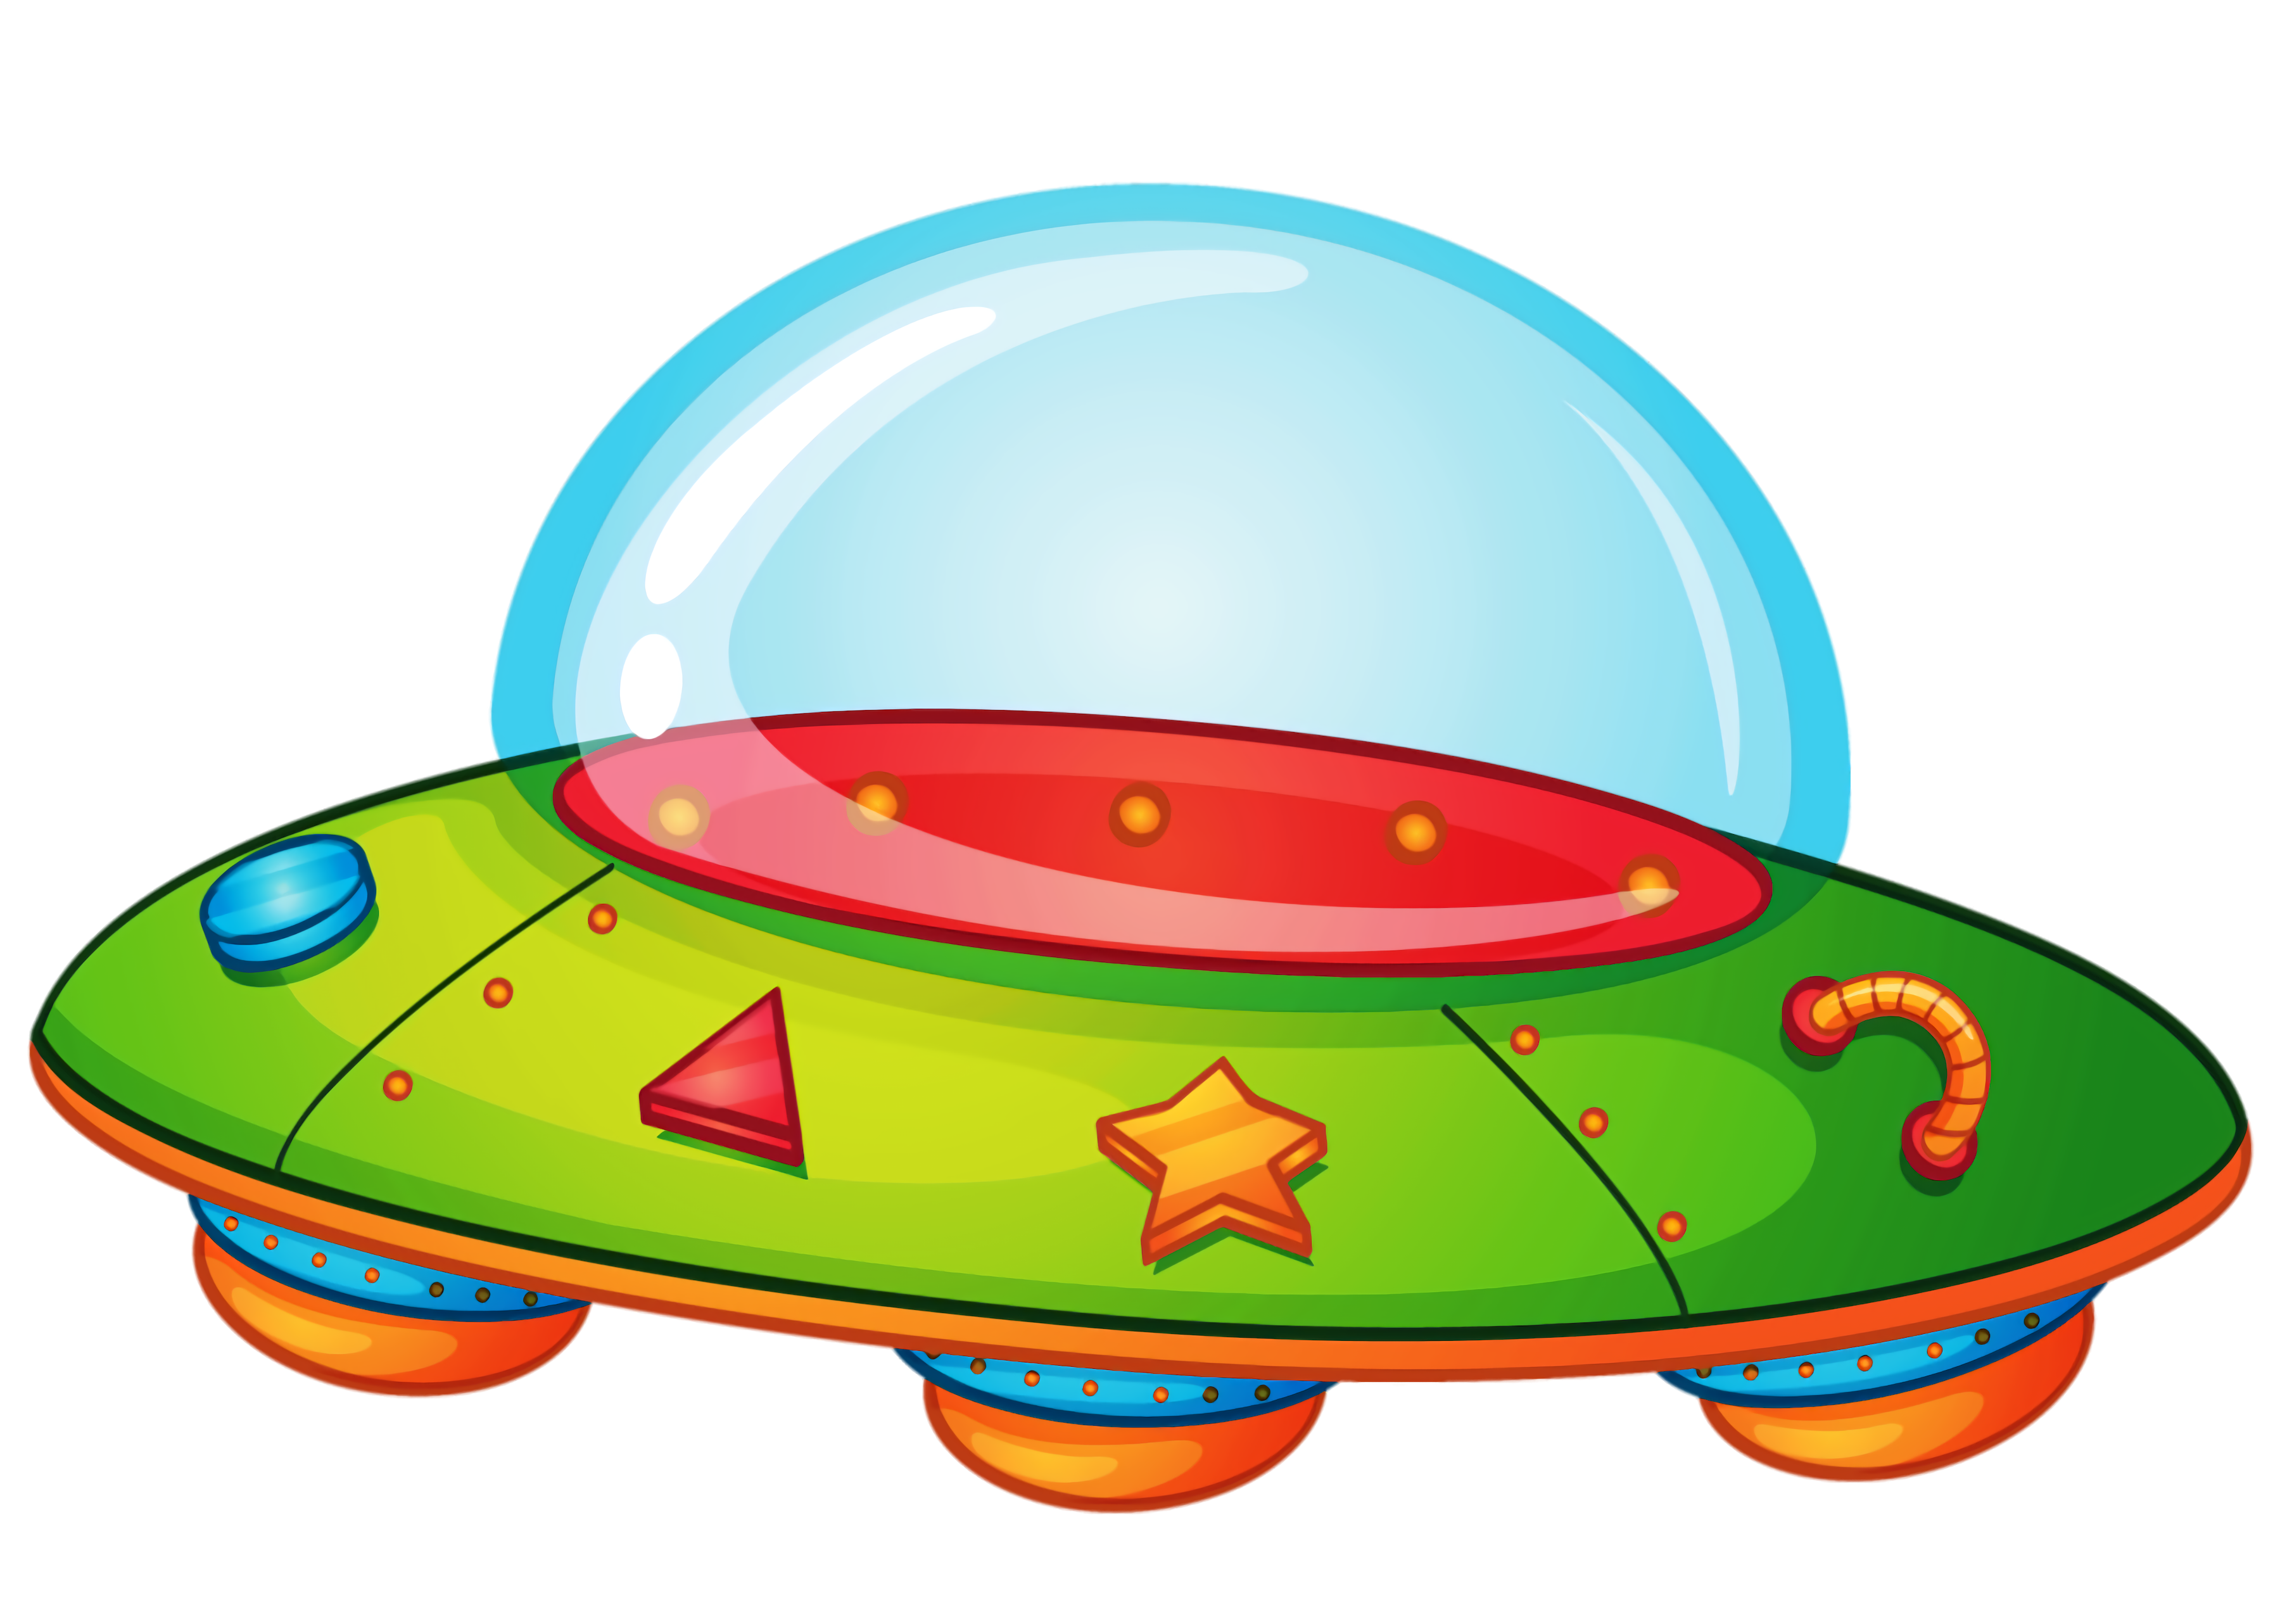 UFO-Spiele